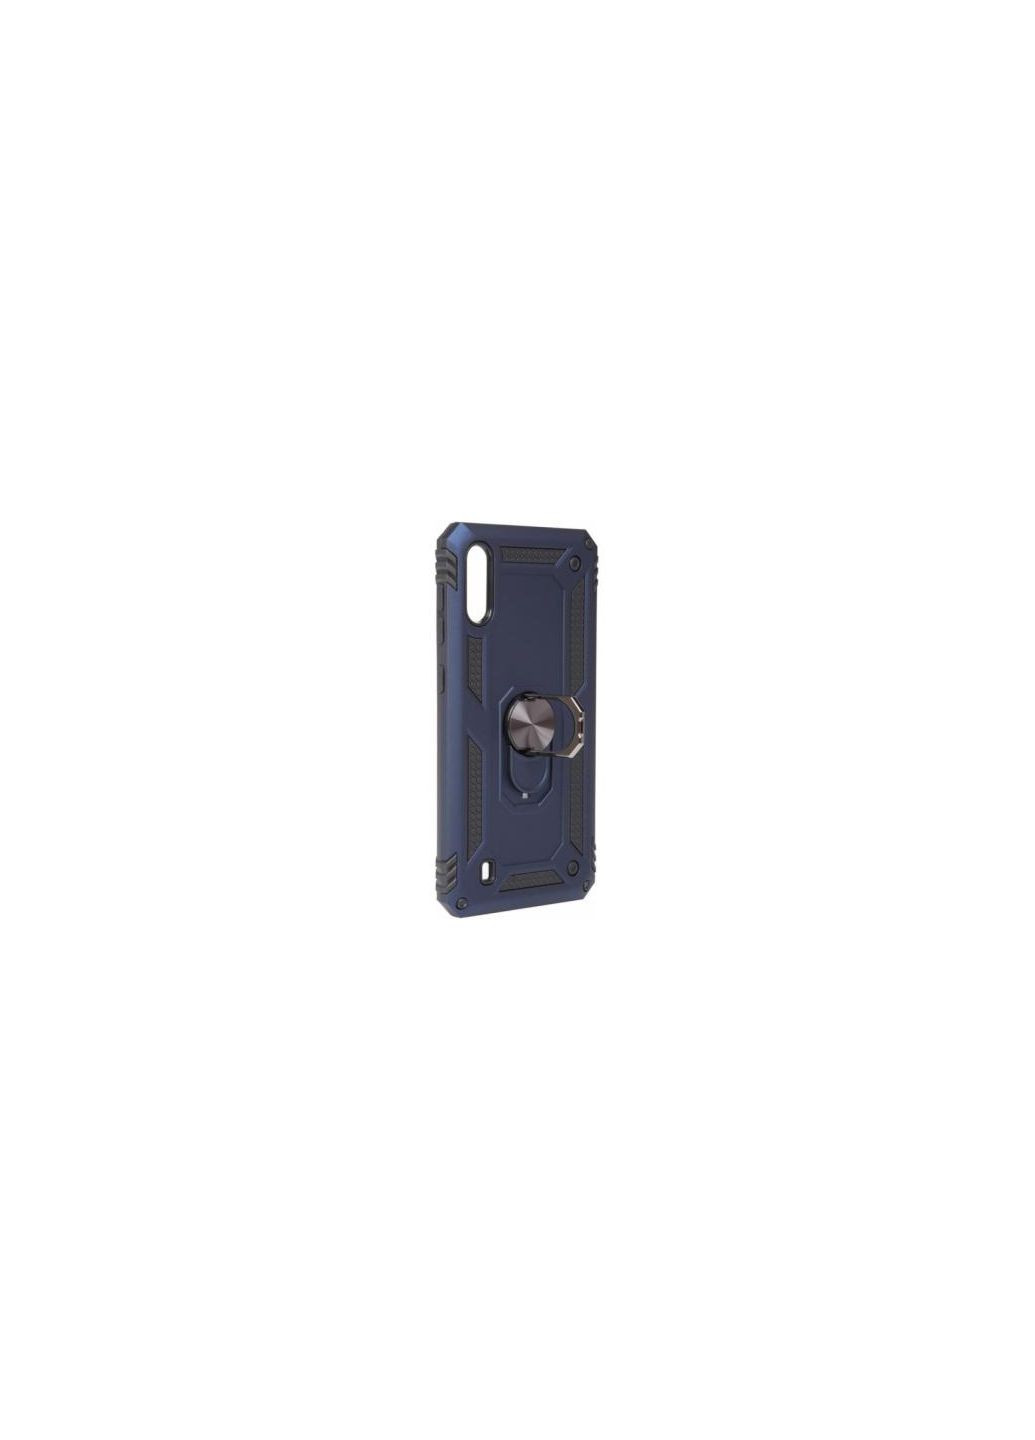 Чехол для мобильного телефона Military Galaxy M10 SMM105 Blue (704061) BeCover military galaxy m10 sm-m105 blue (275078855)